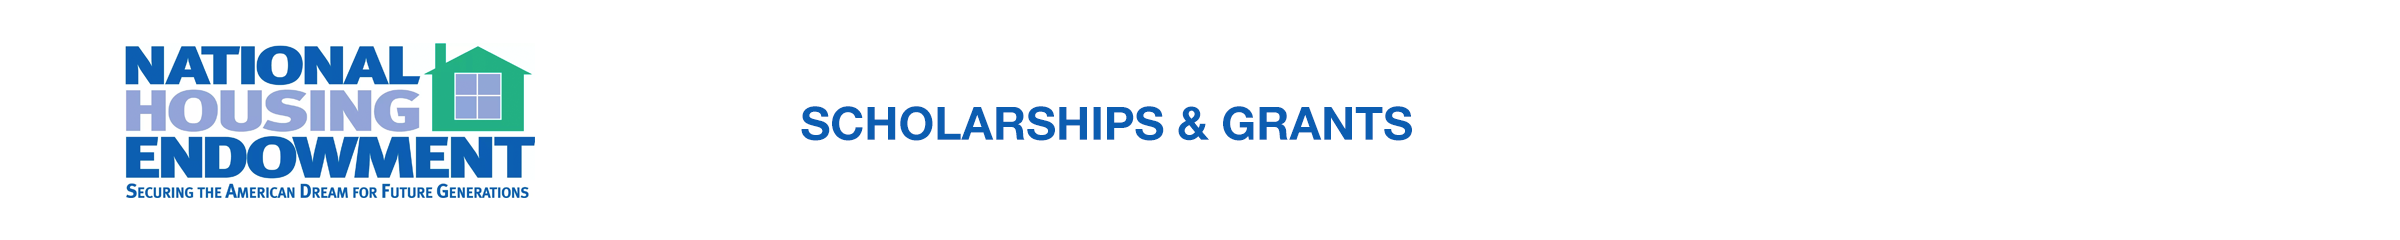 NHE Scholarships & Awards logo